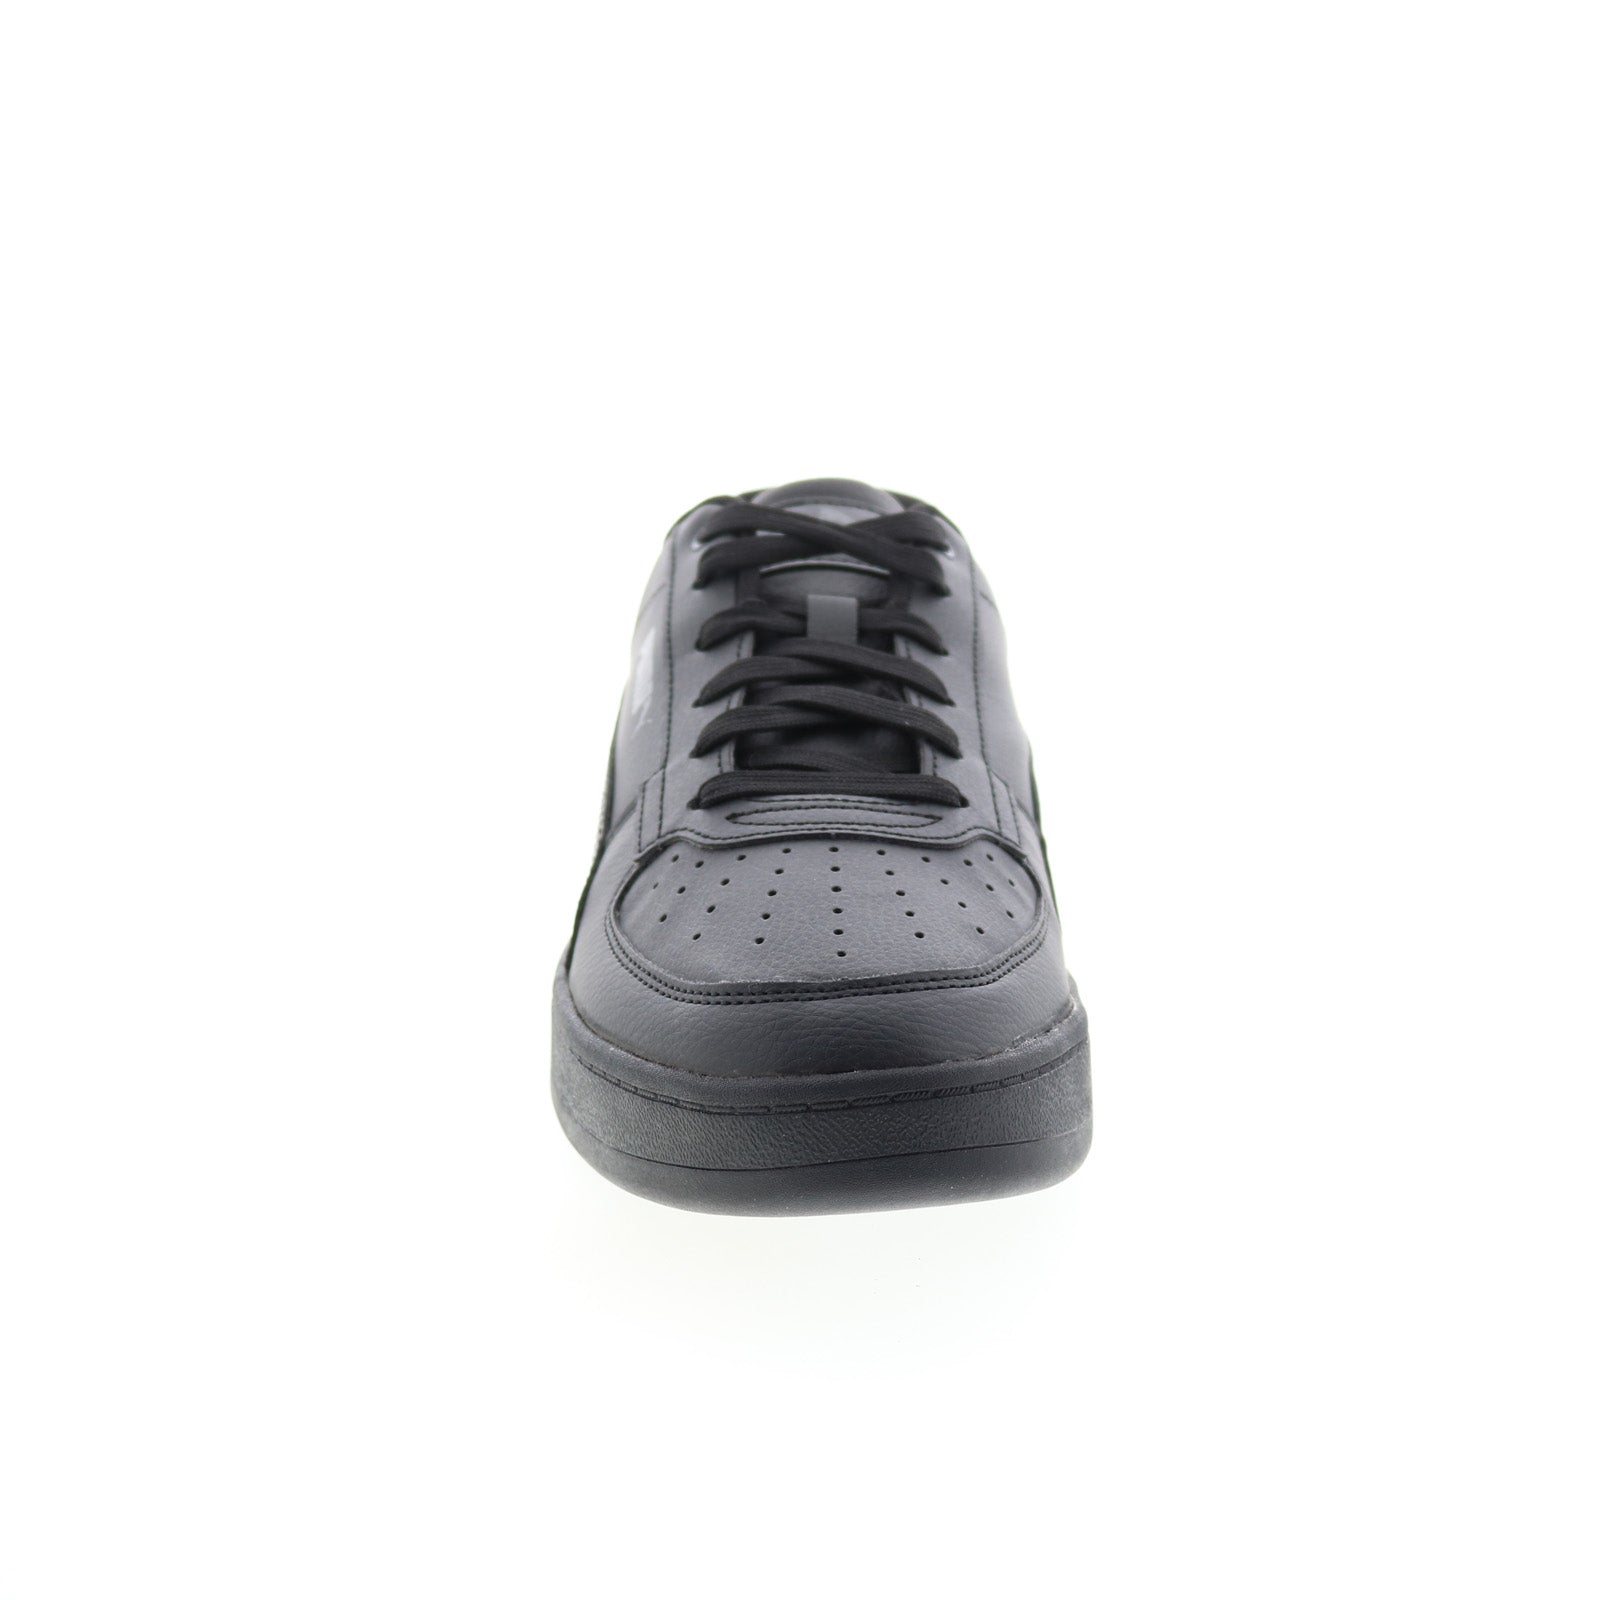 Puma Caven 2.0 Wip Men's Shoes Black 392332 - 02 - Puma-select